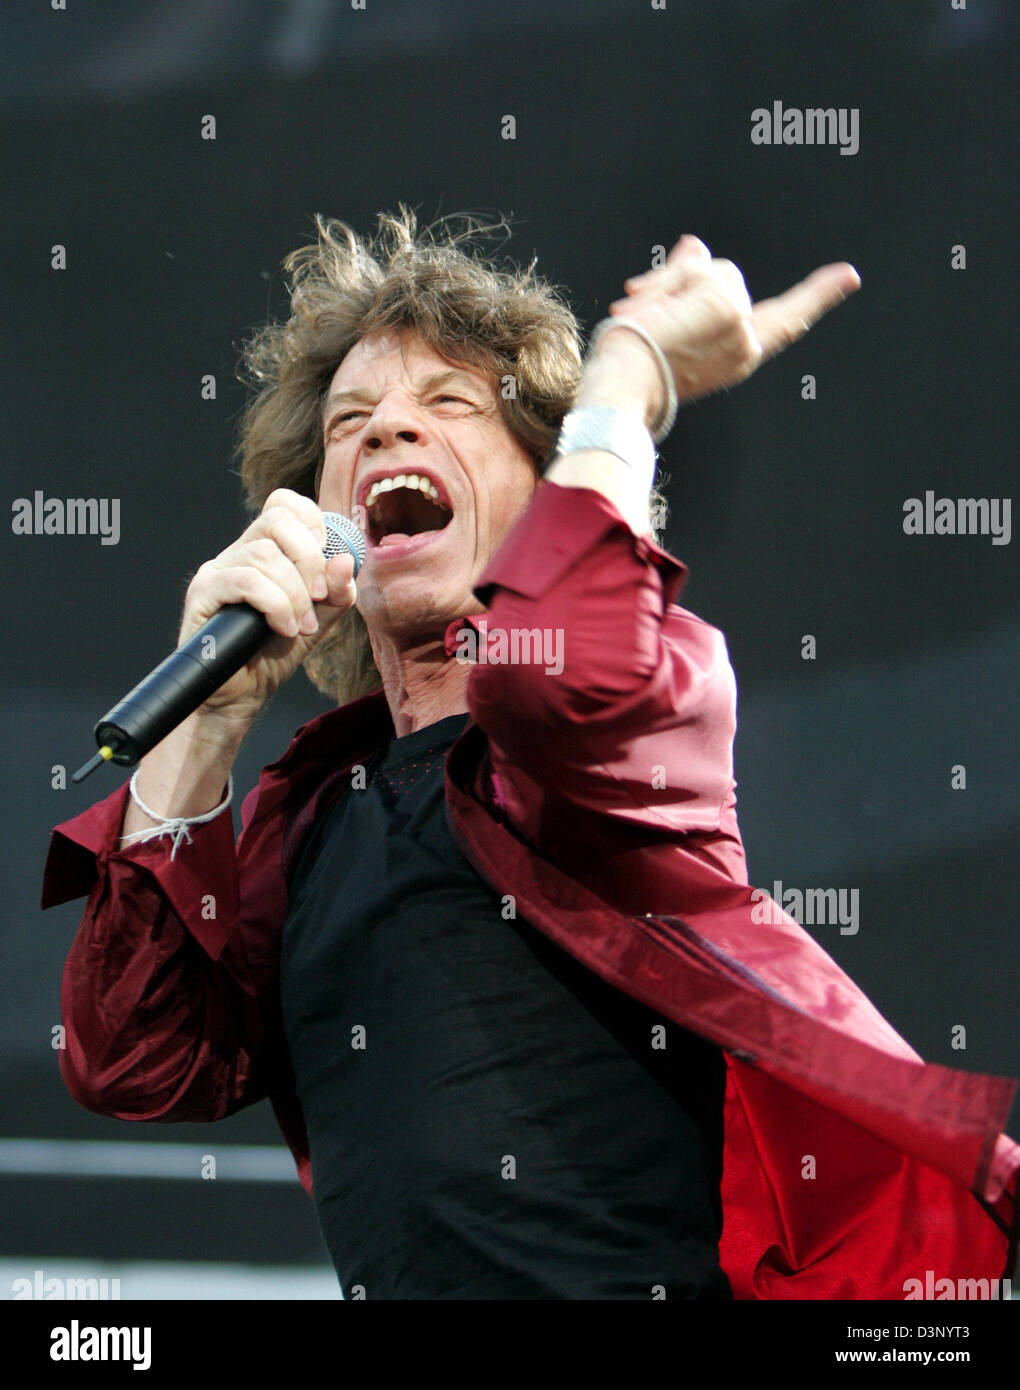 Mick Jagger von den Rolling Stones führt während eines Konzerts der "A  Bigger Bang" Tour in Köln, 23. Juli 2006. Foto: Rolf Vennenbernd  Stockfotografie - Alamy